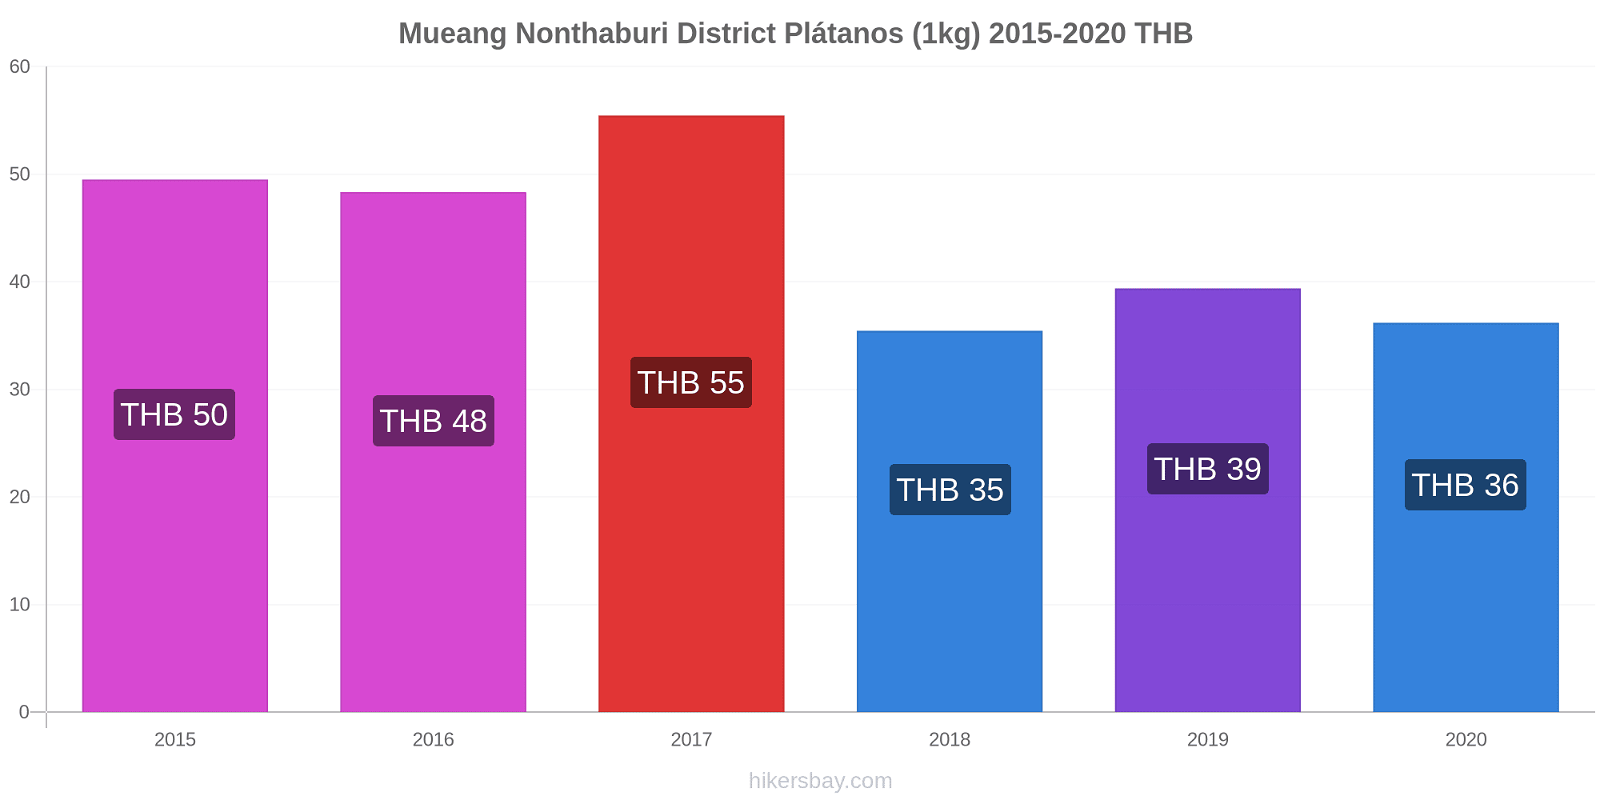 Mueang Nonthaburi District cambios de precios Plátano (1kg) hikersbay.com